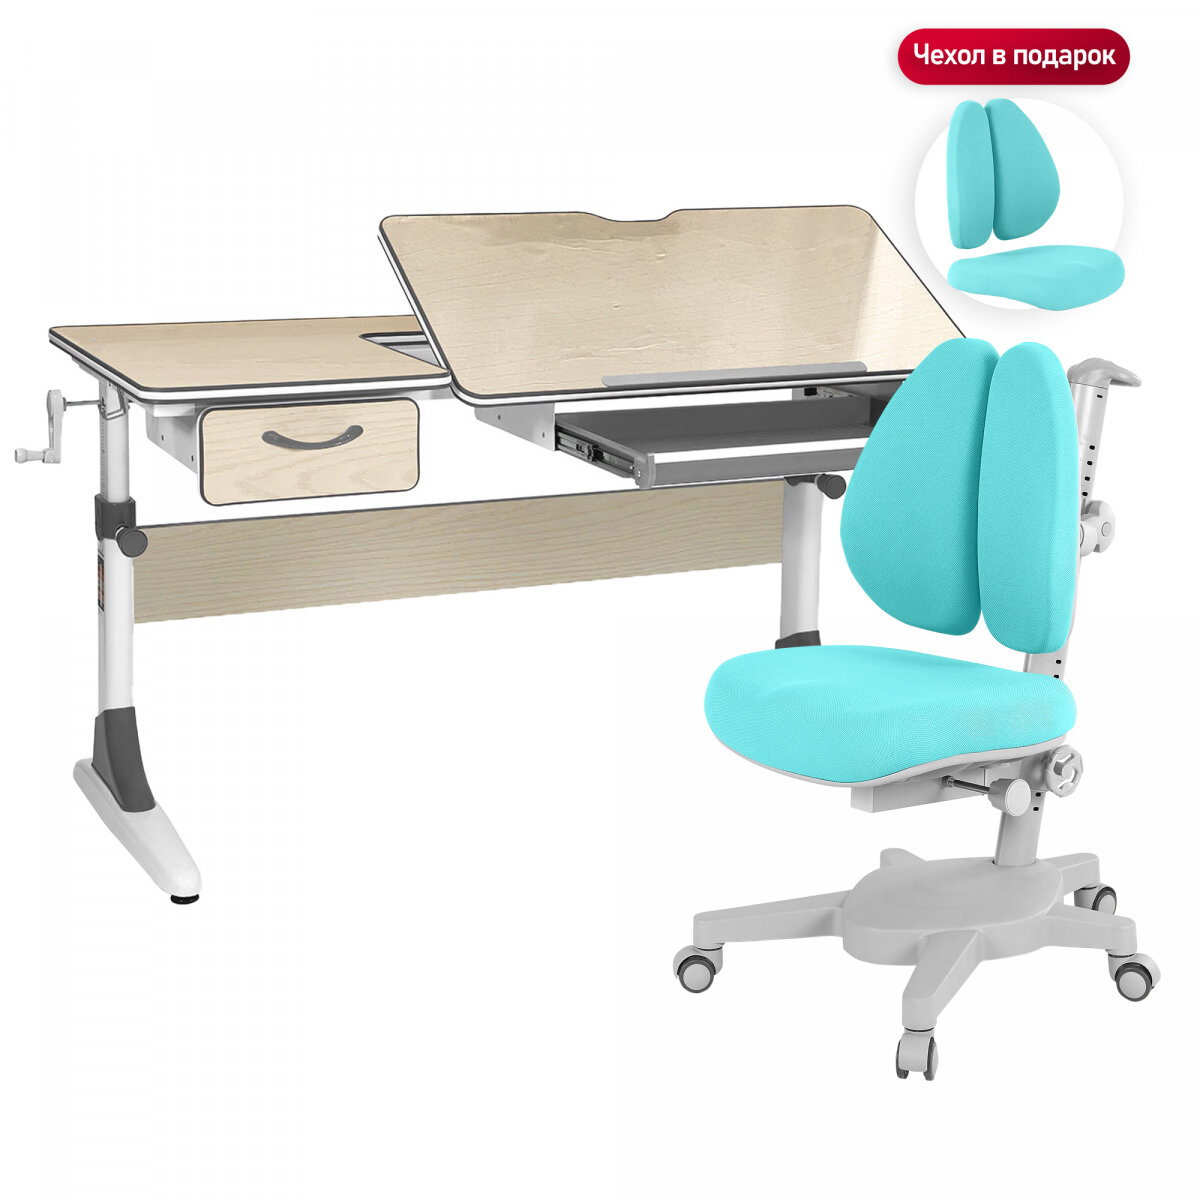 Комплект Anatomica Smart-60 парта + кресло + органайзер + ящик клен/серый с голубым креслом Armata Duos